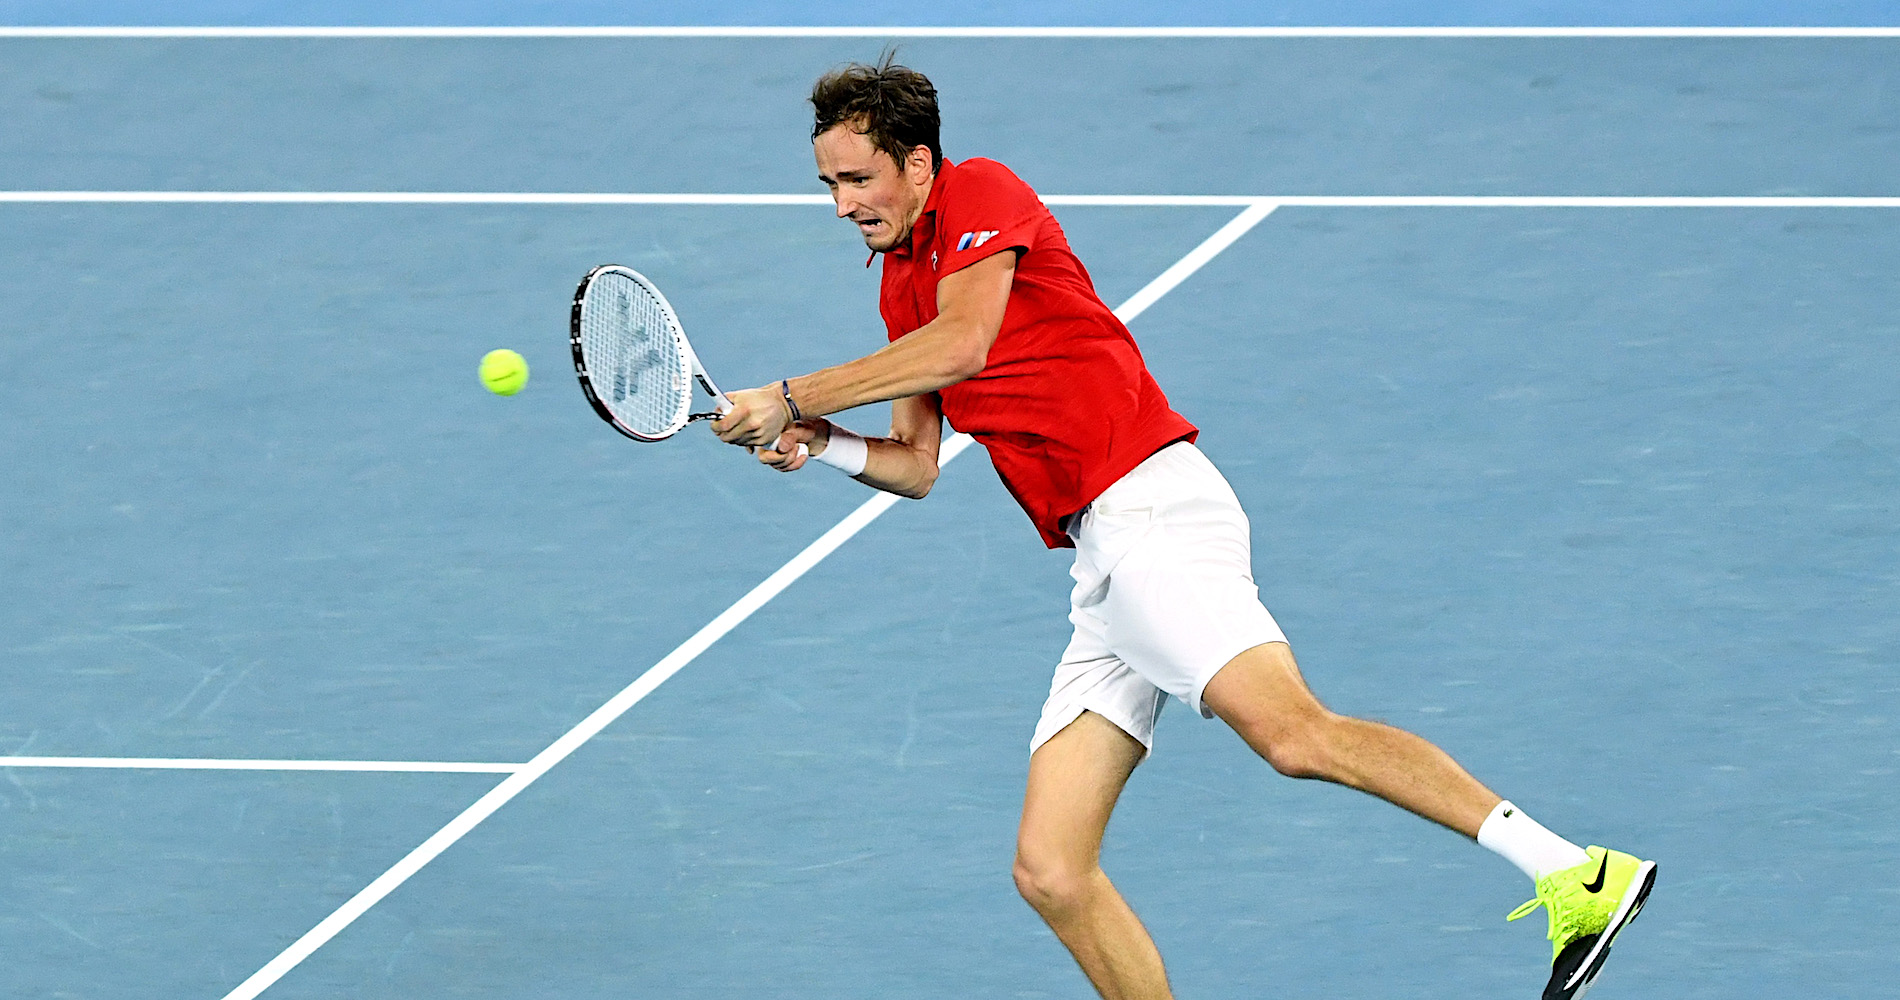 Tennis, as Daniel Medvedev played 1